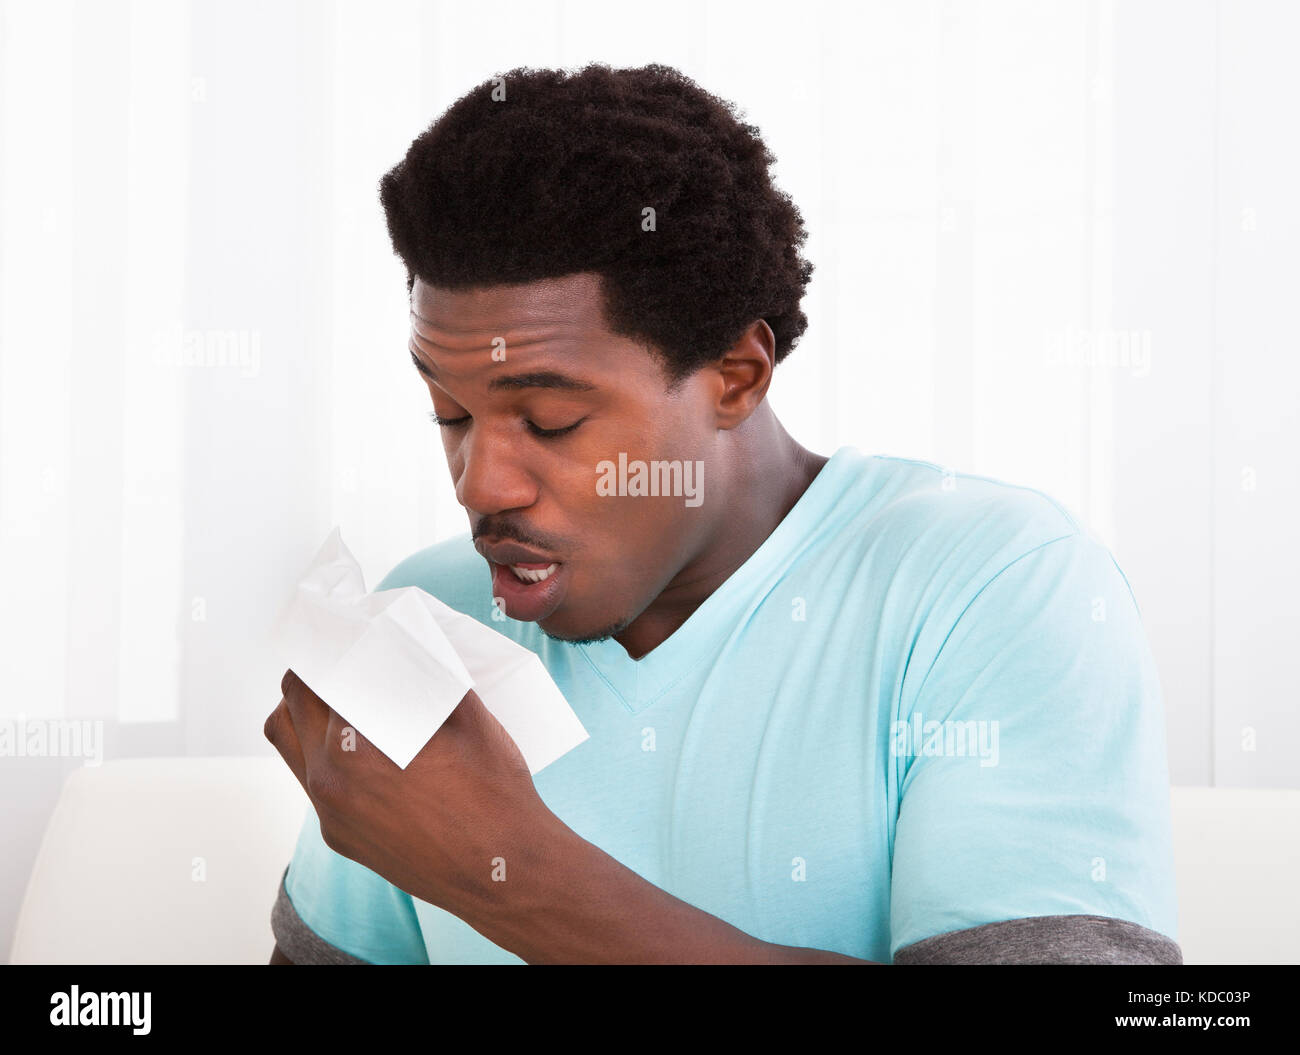 African giovane uomo avente un freddo il trattenimento del tessuto e soffiare il naso Foto Stock